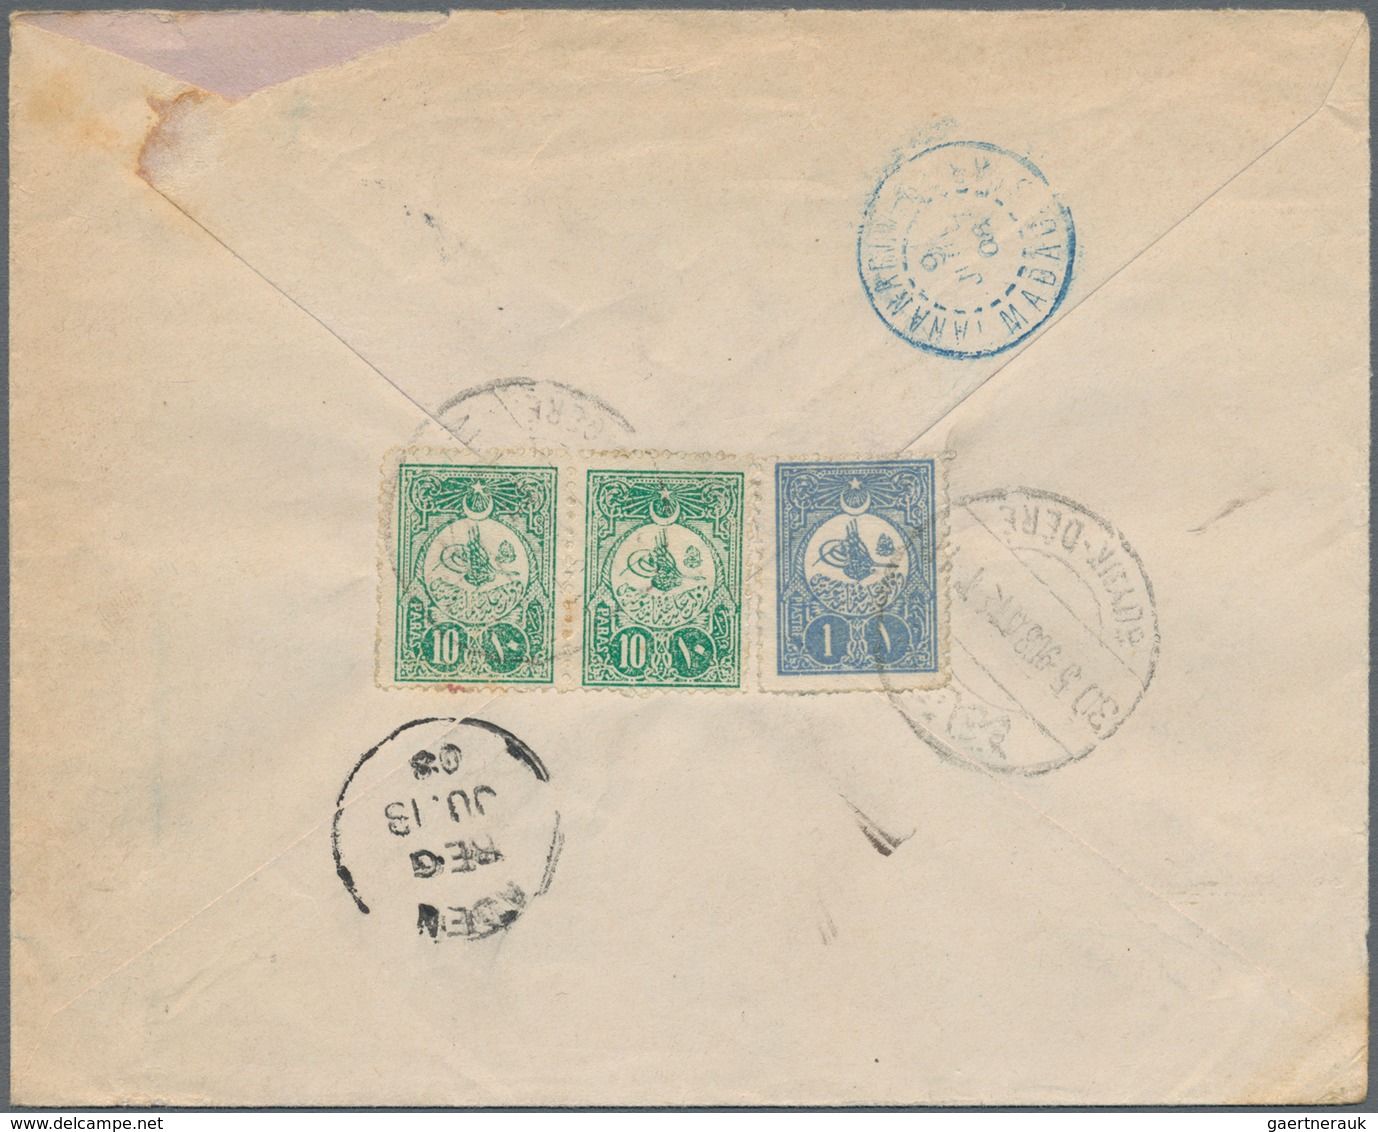 Türkei - Ganzsachen: 1908, Envelope 20 P. Uprated On Reverse 1 P., 10 P. (pair) Canc. "BÜYÜK-DERE 30 - Ganzsachen